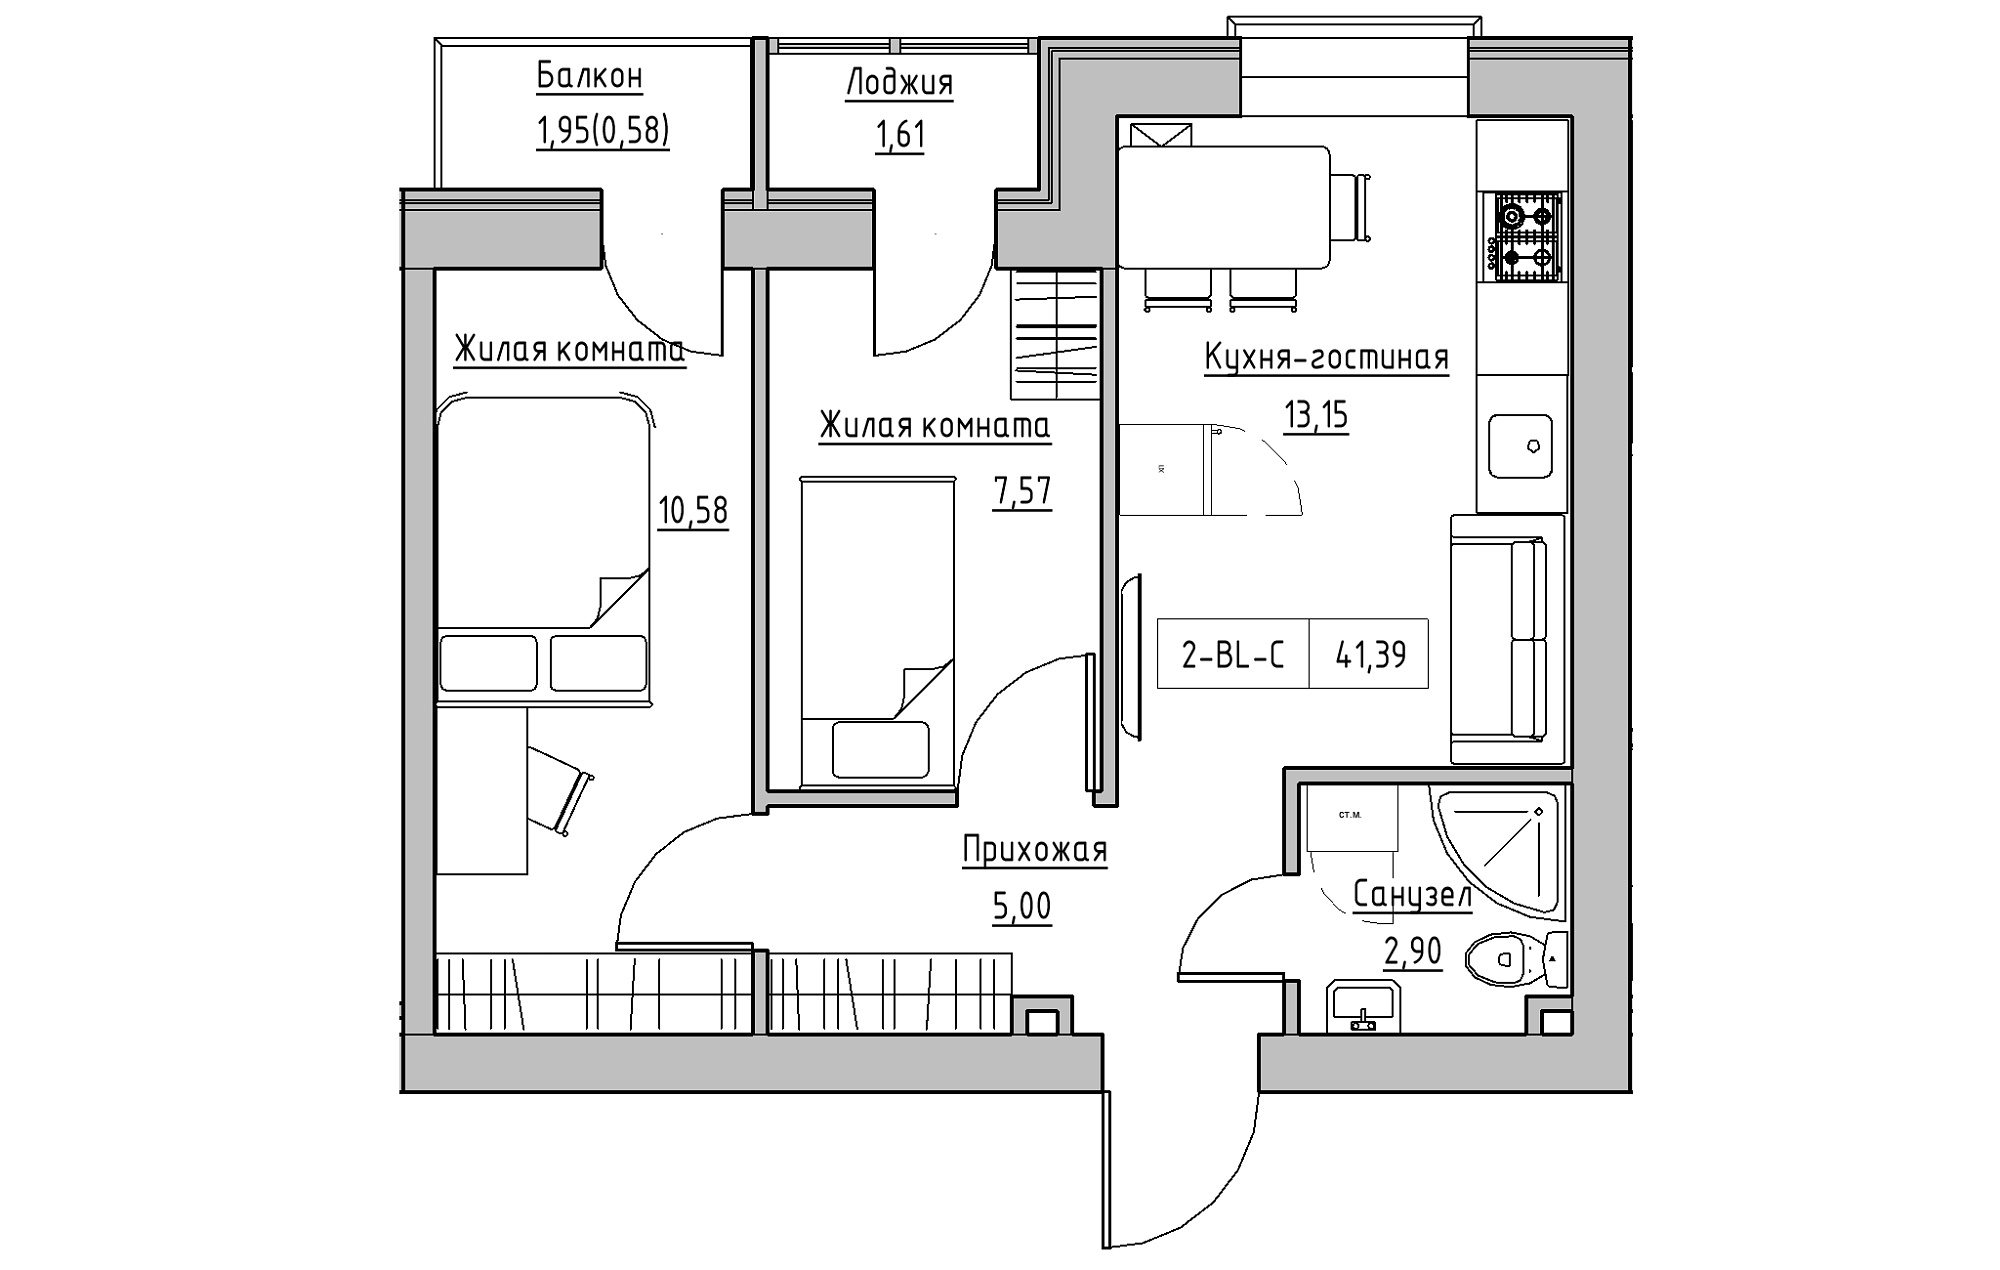 Планировка 2-к квартира площей 41.39м2, KS-018-03/0005.